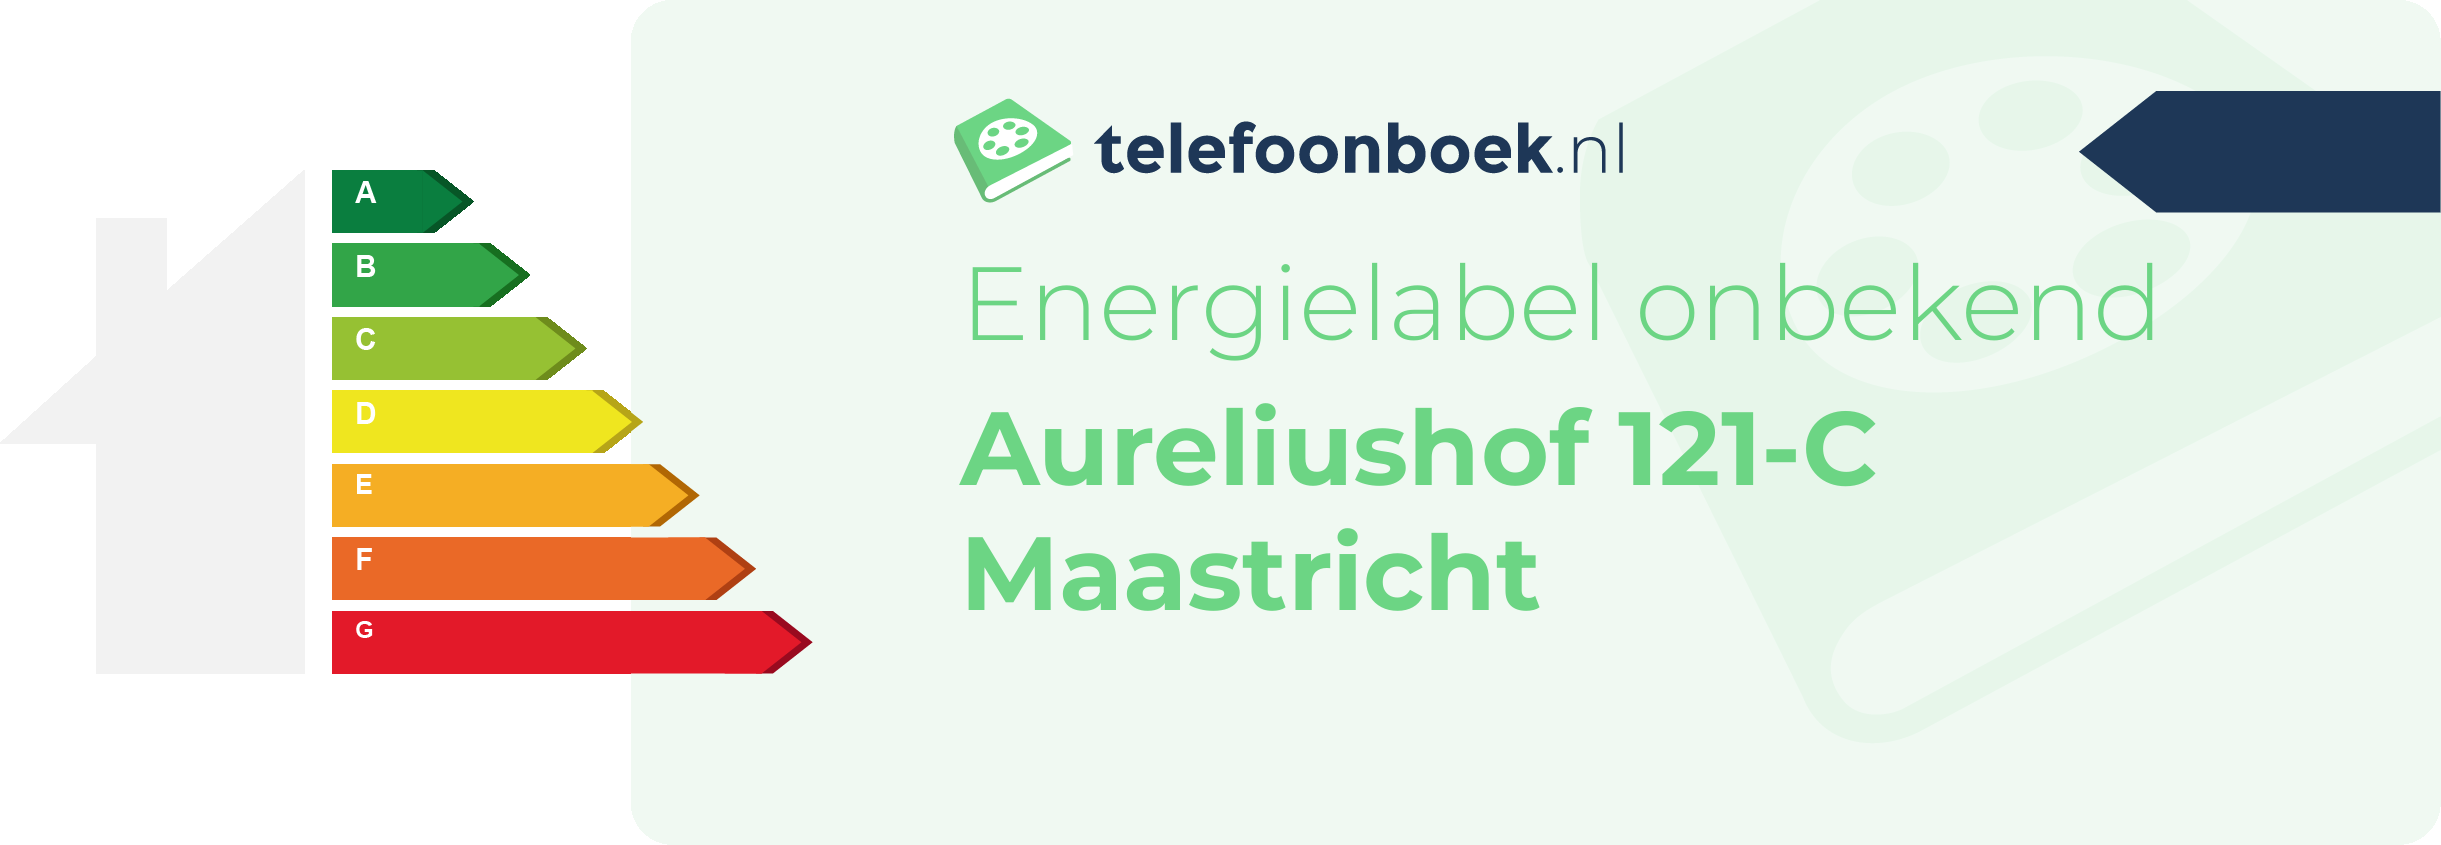 Energielabel Aureliushof 121-C Maastricht